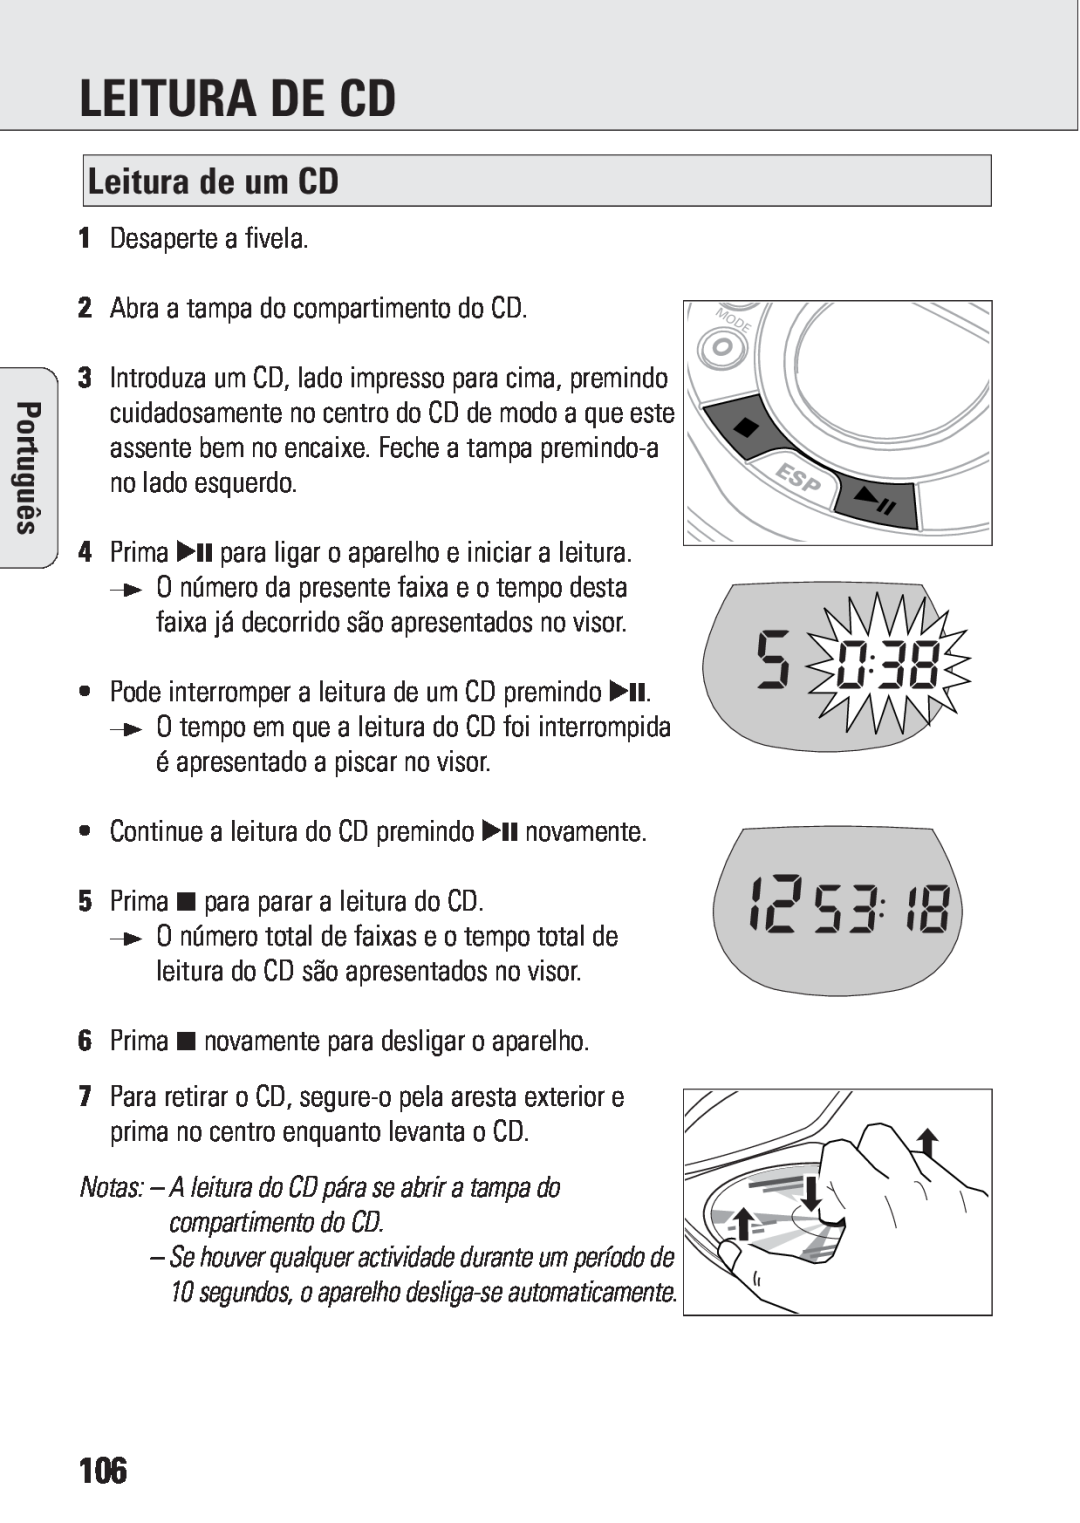 Philips ACT 7583 manual Leitura De Cd, Leitura de um CD, Português 